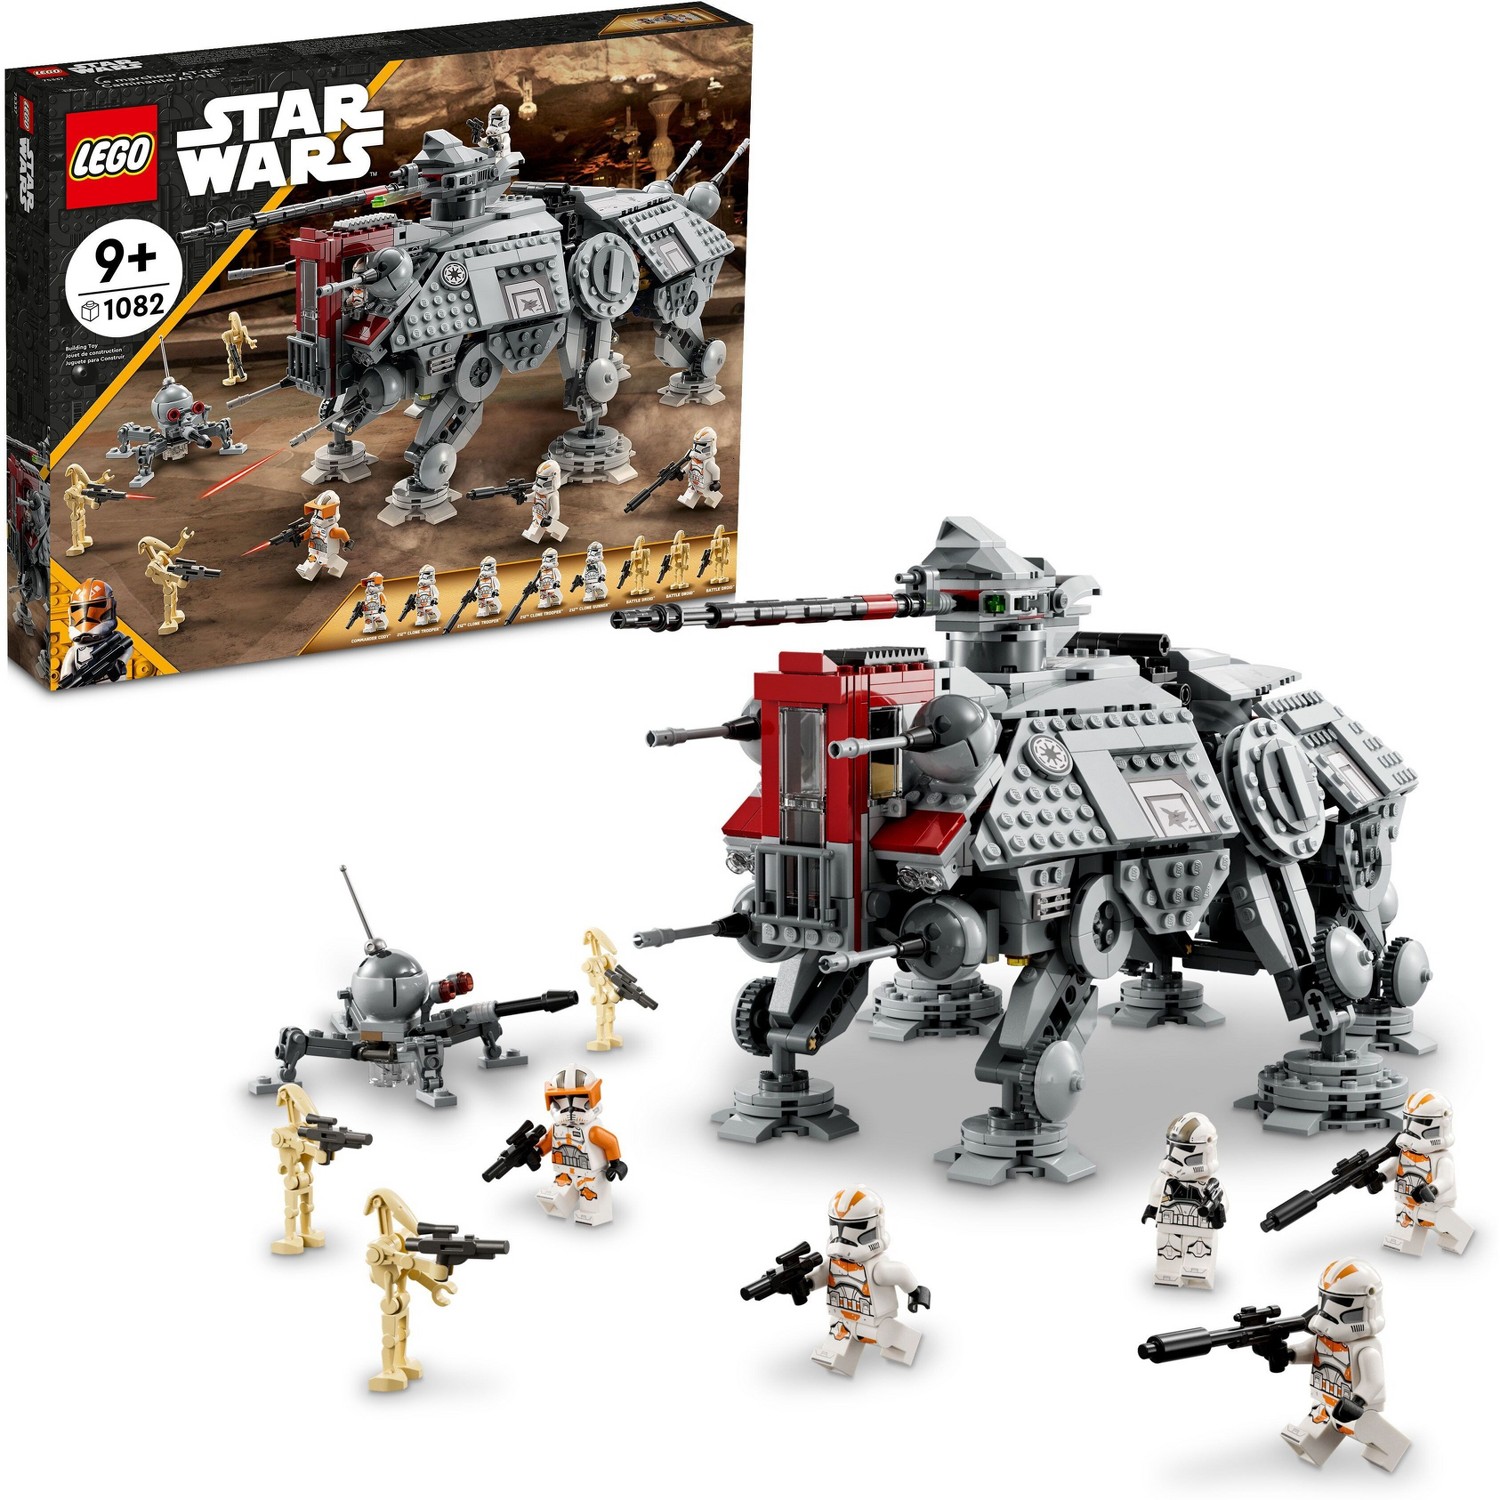 LEGO AT-TE™ Walker in stock finally!!!   #75337 $139.99